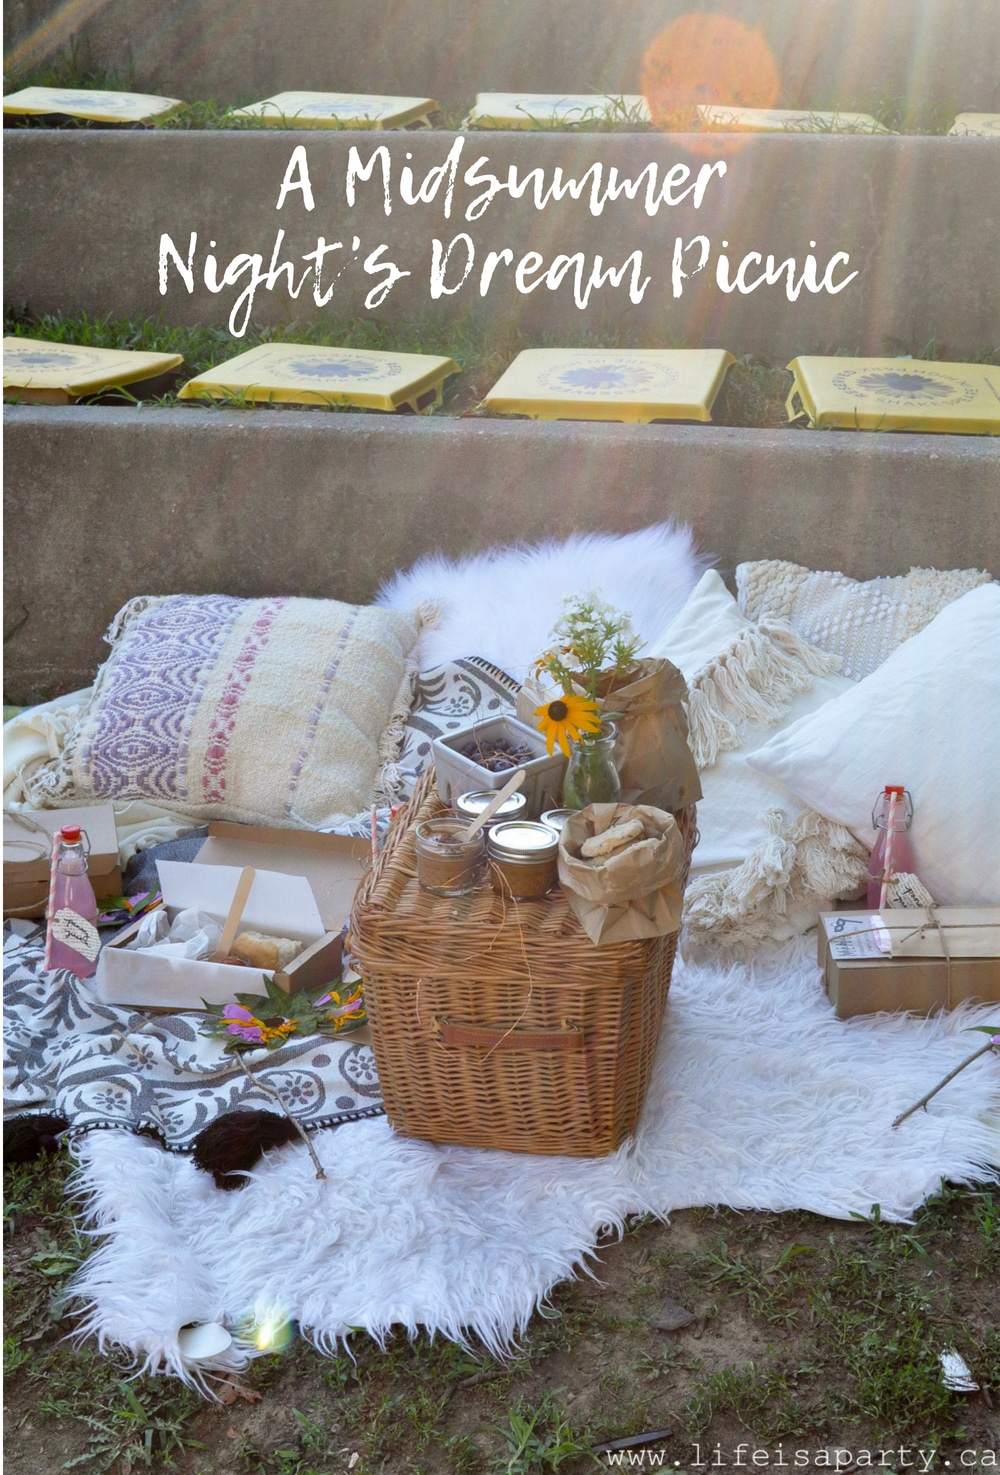 A Midsummer Night’s Dream Picnic